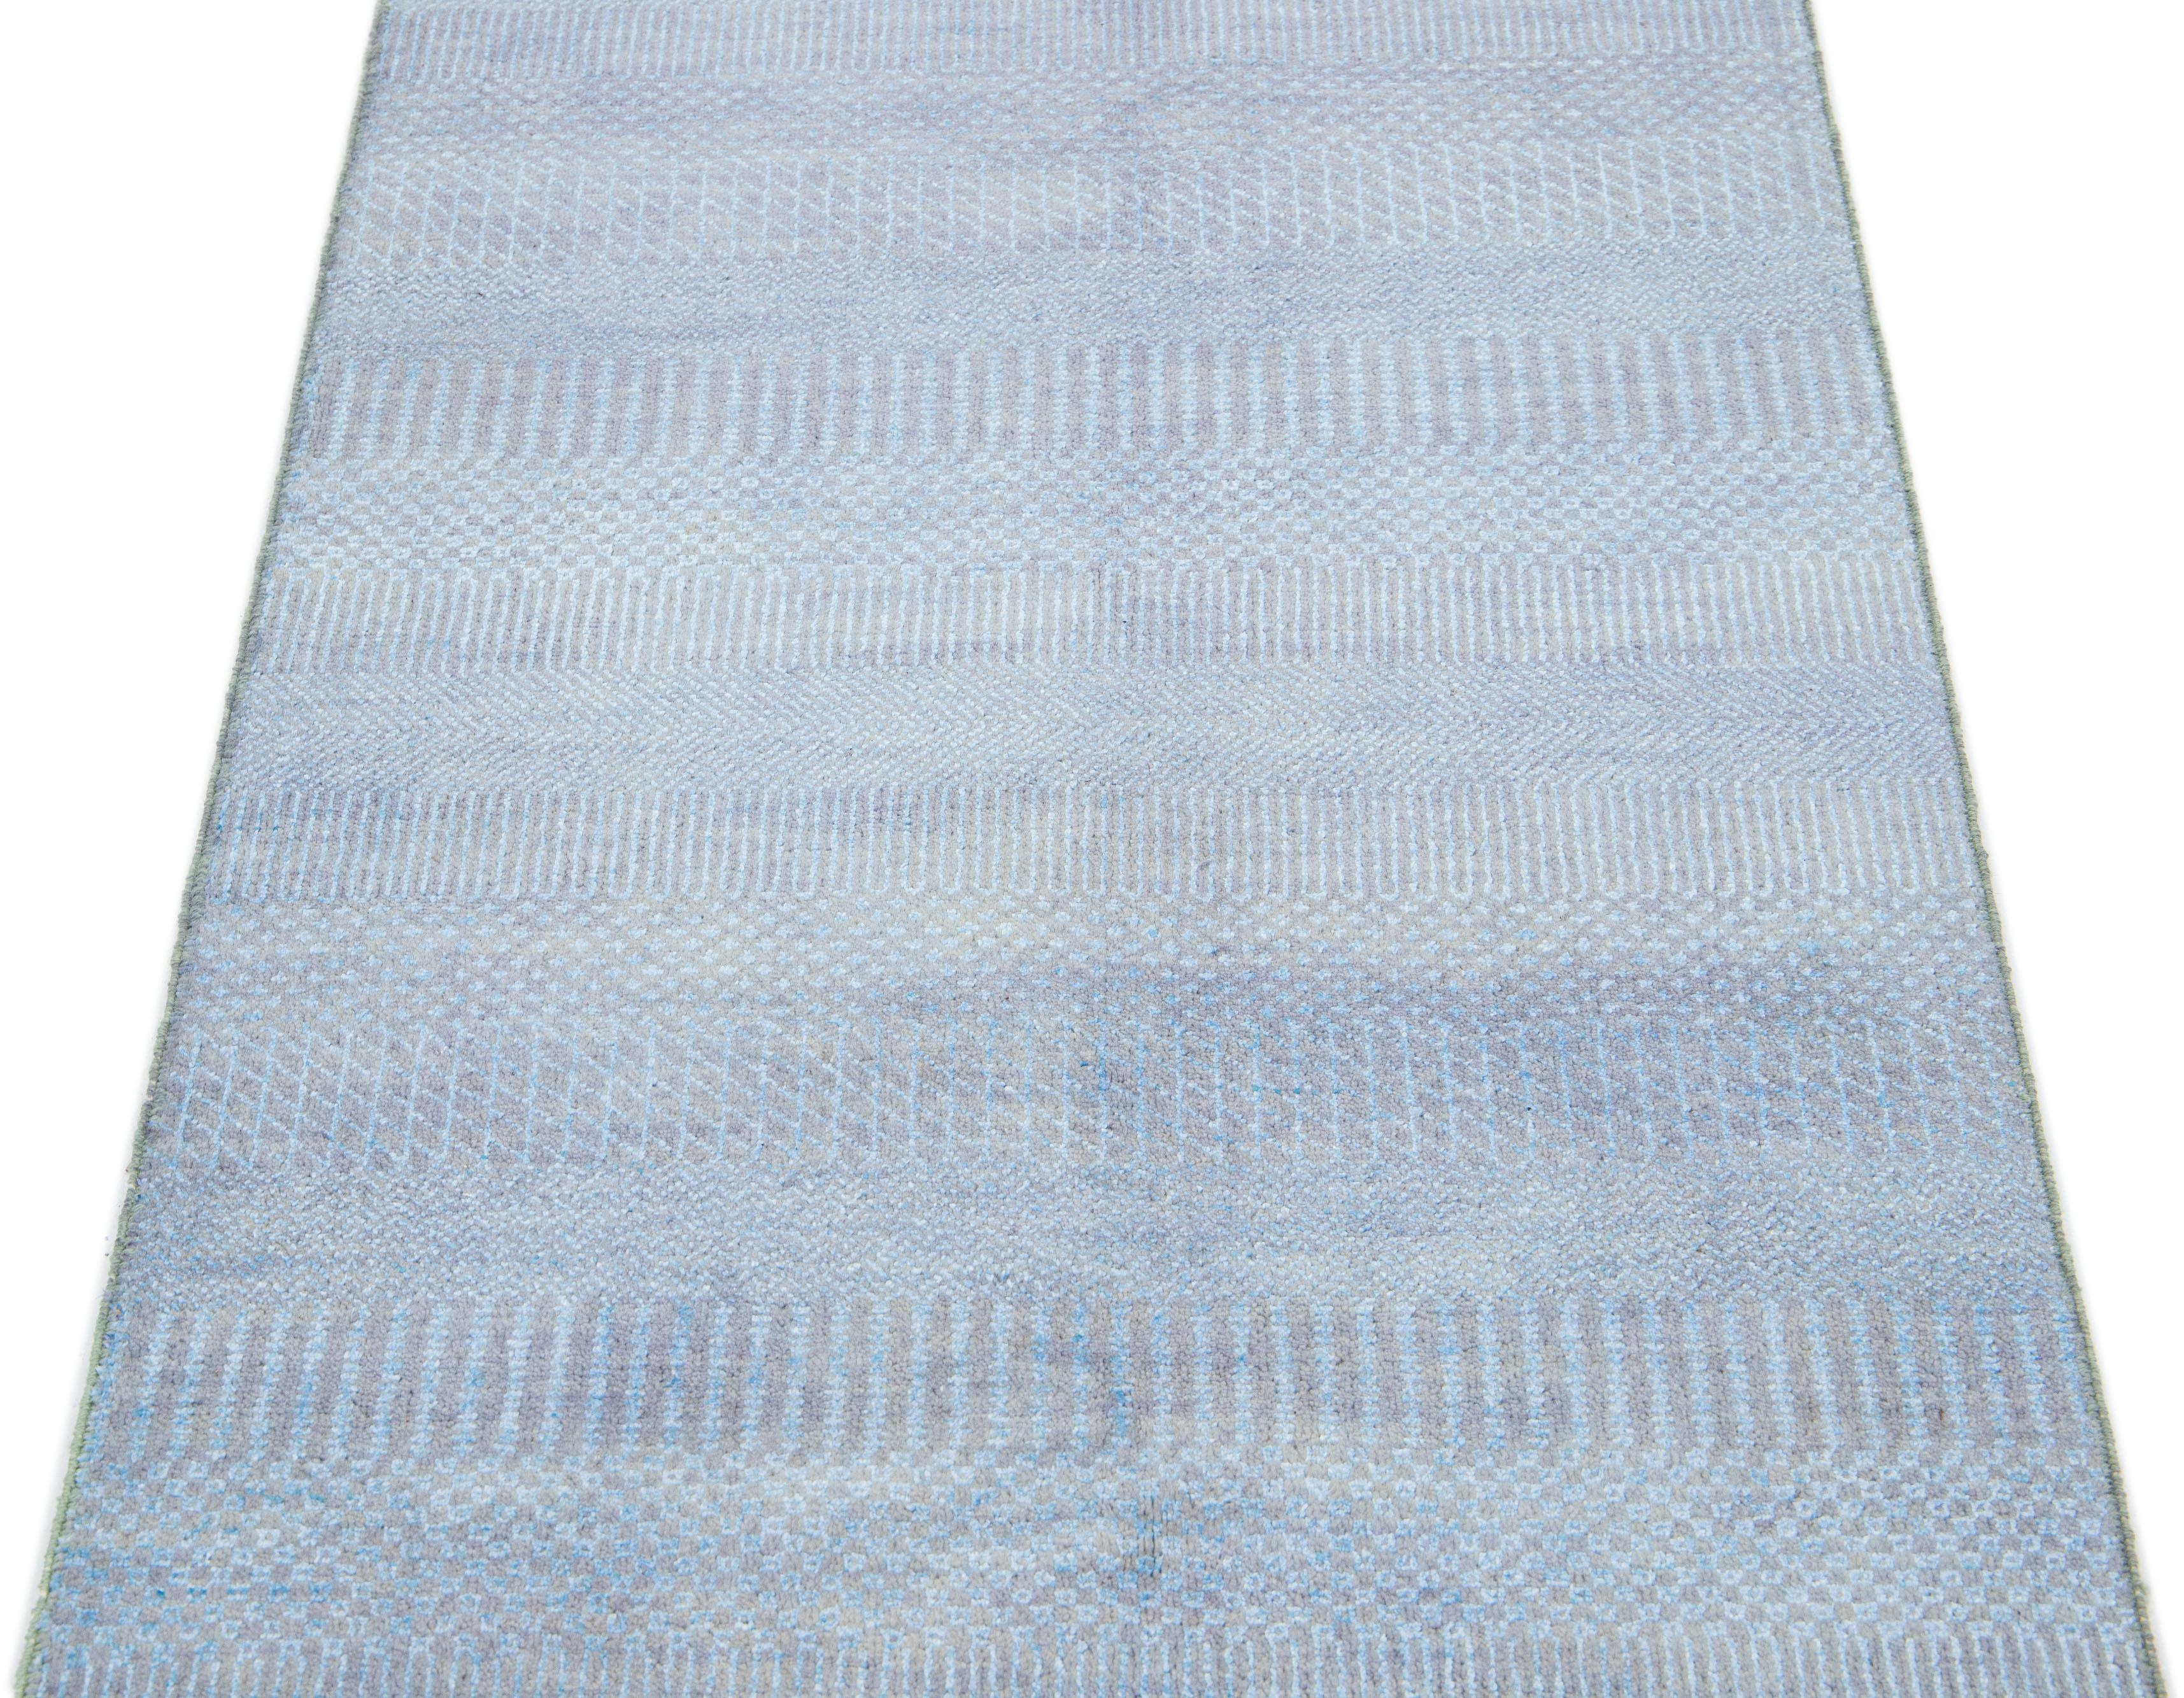 Dieser lange, handgeknüpfte Teppich ist aus Wolle gefertigt. Es zeichnet sich durch ein dezentes hellblaues Farbschema aus, das durch ein geometrisches Allover-Muster akzentuiert wird - eine ideale Ergänzung für jede moderne Einrichtung.

Dieser